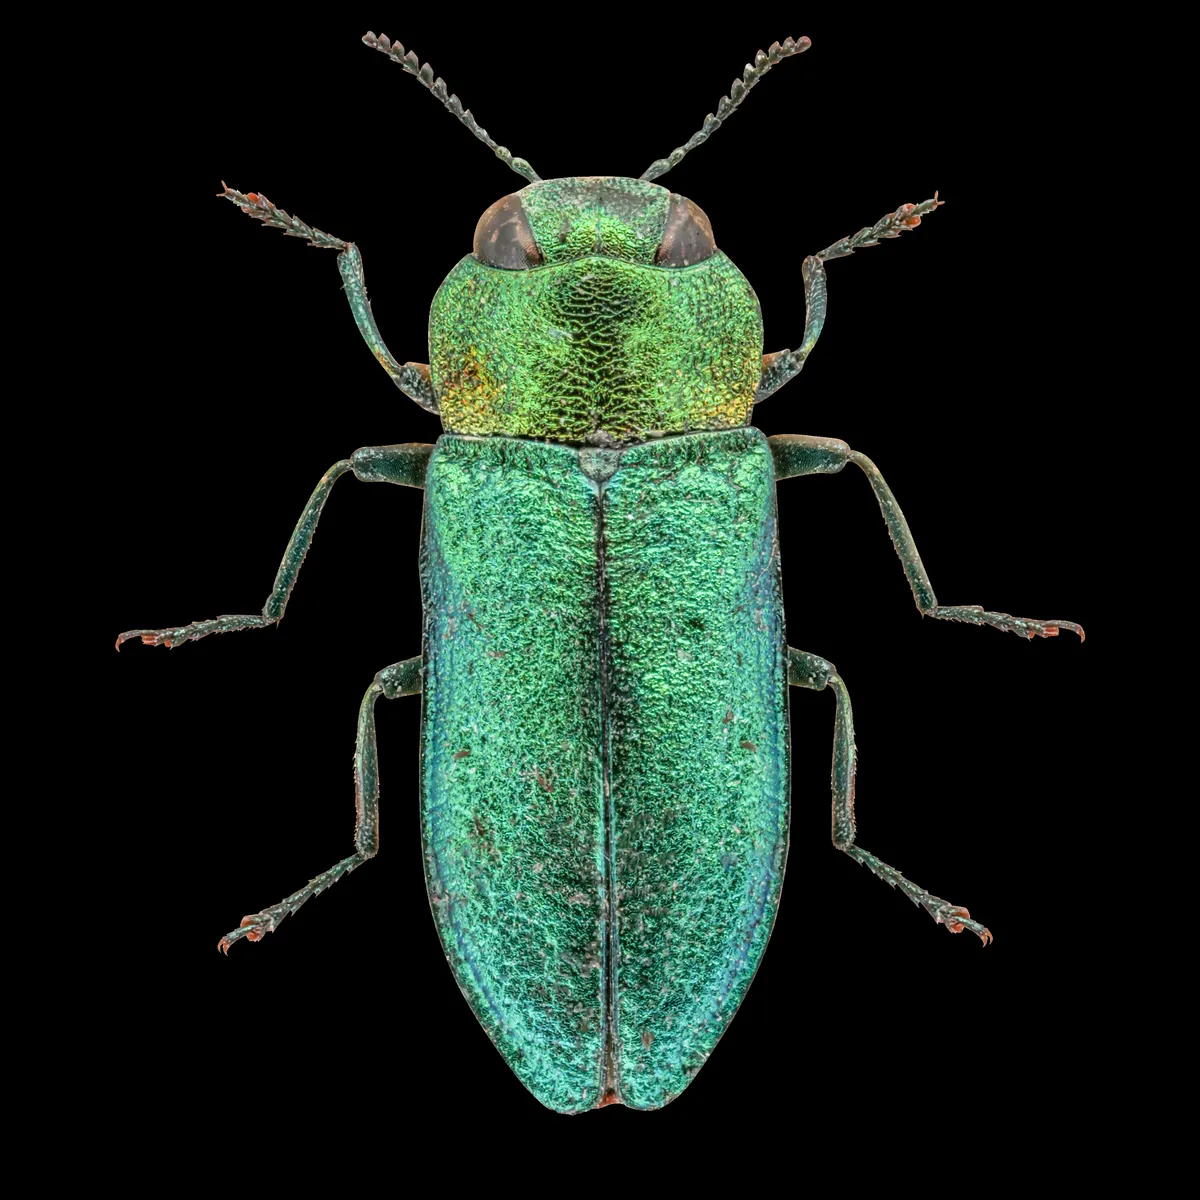 Jewel beetle - Anthaxia nitudula ©Martin Wilson